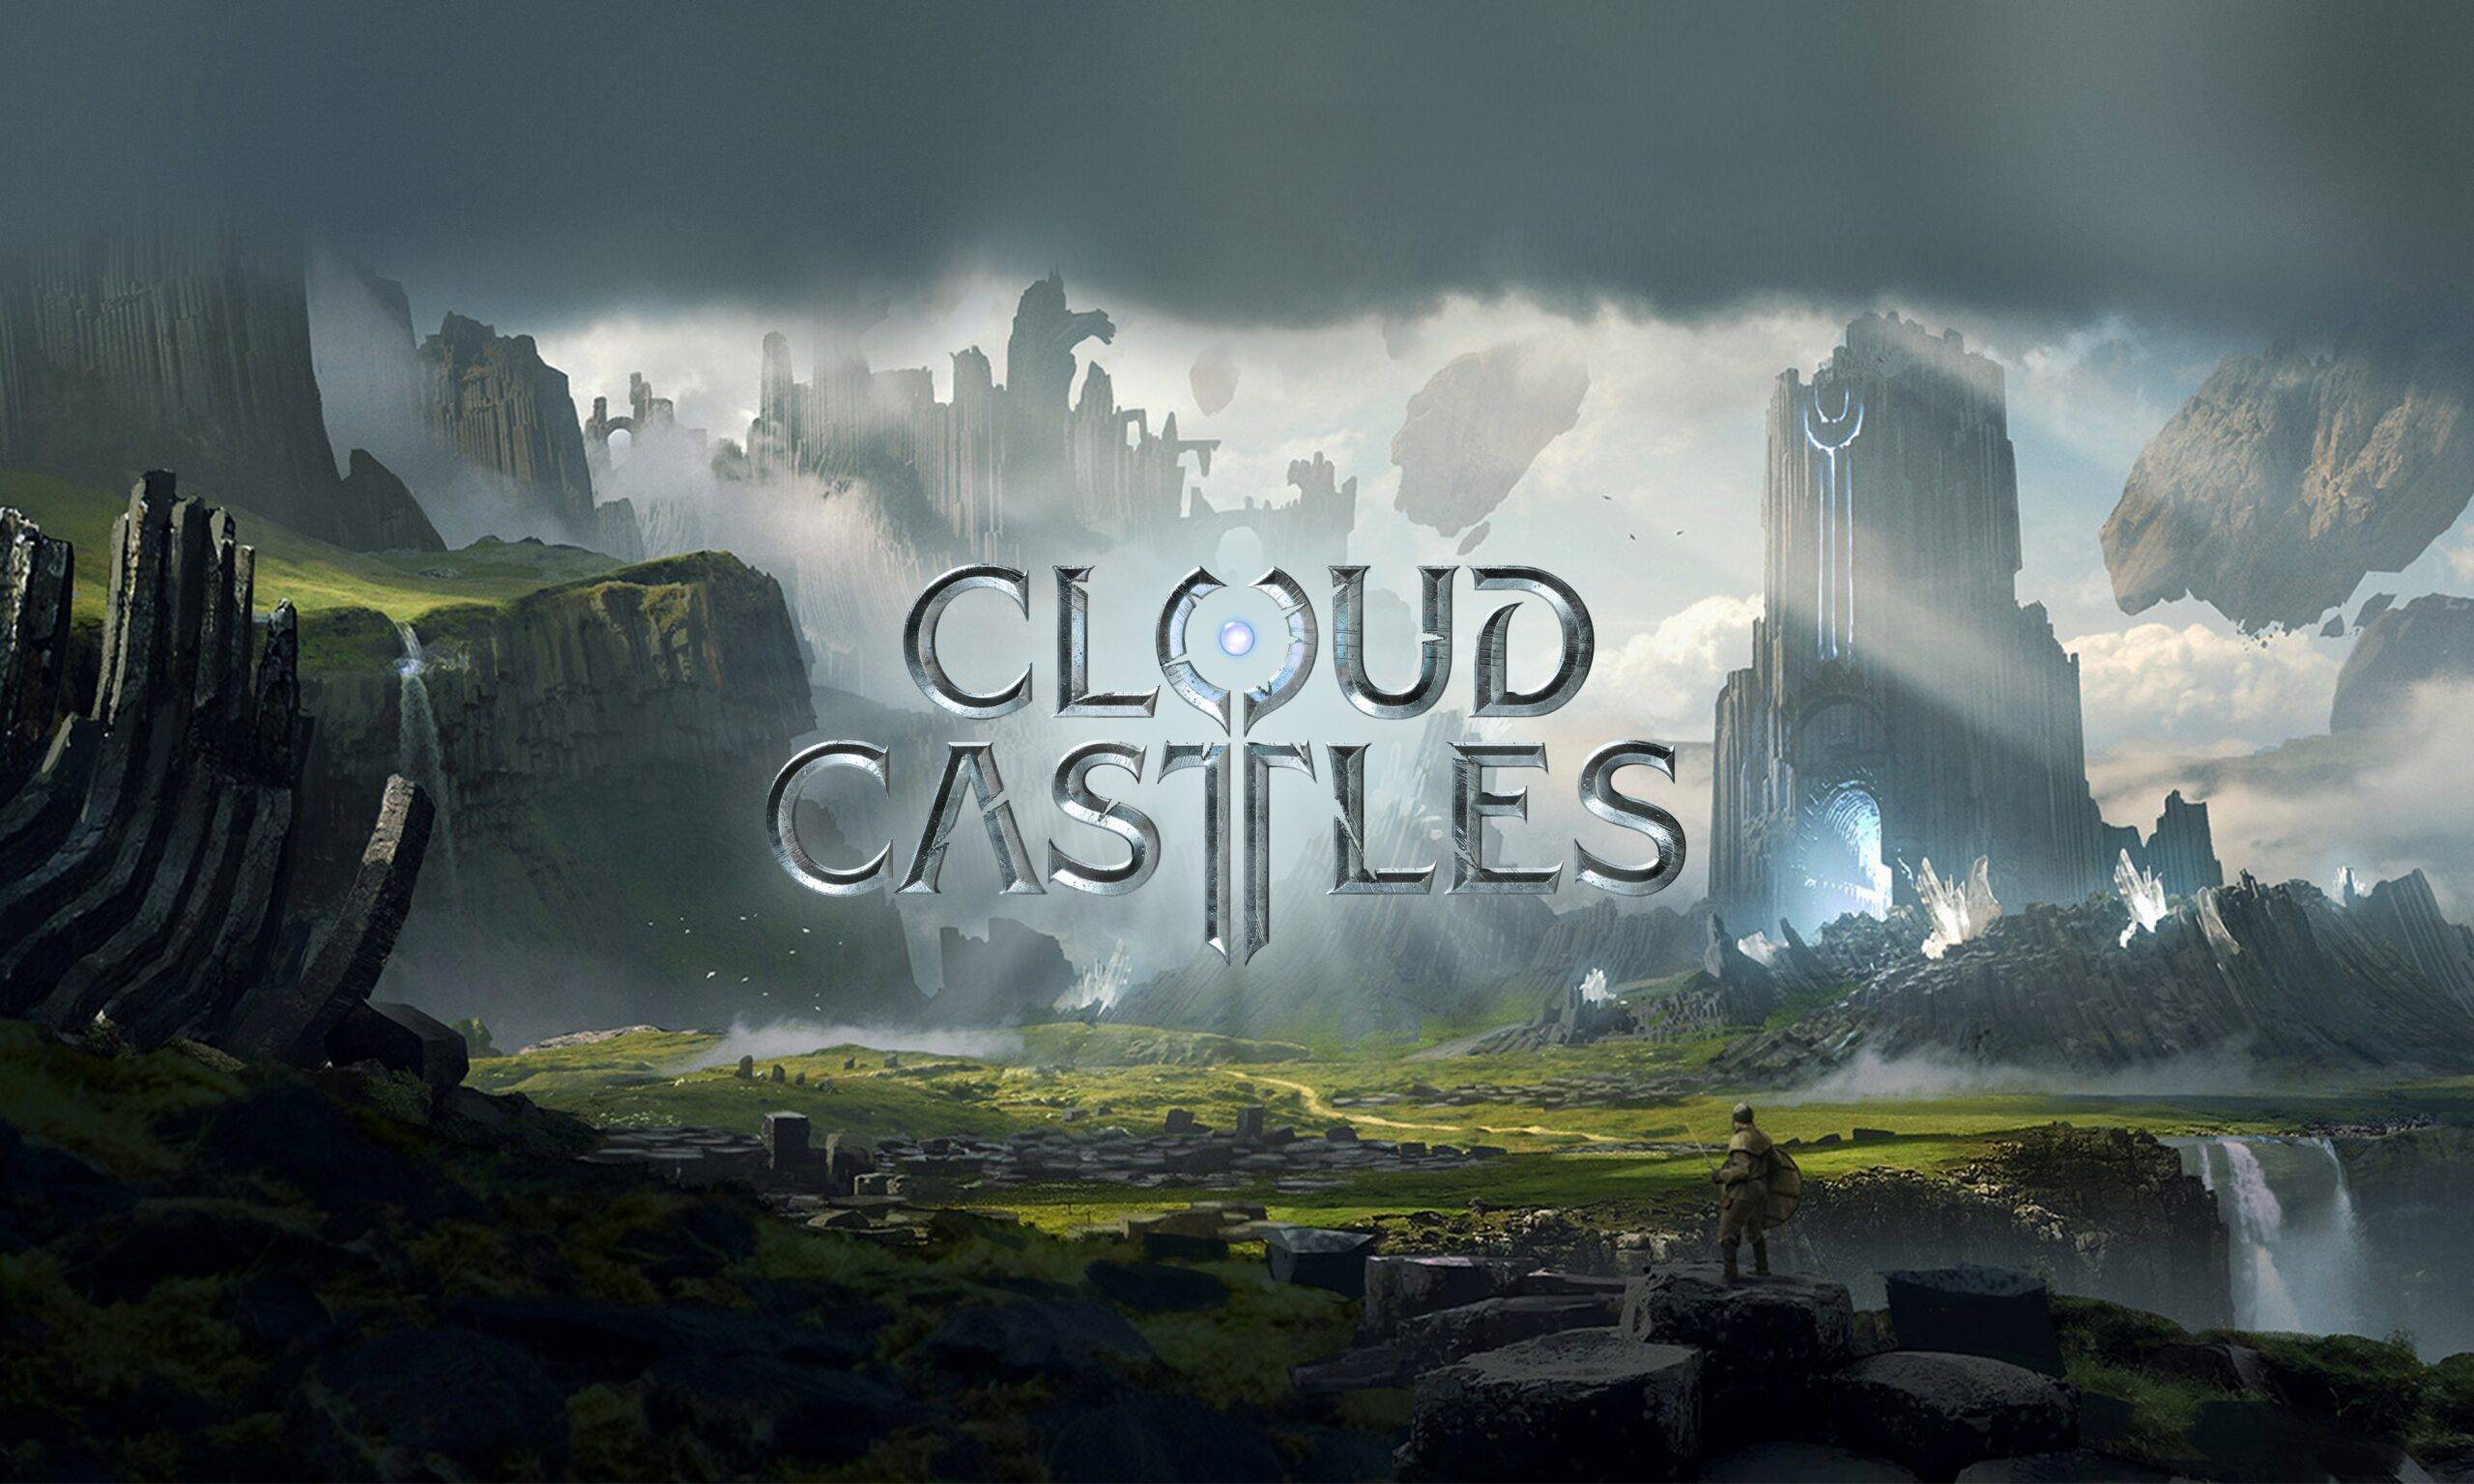 Cloud Castles - Actiestrategiespel, UE 5 en Web3 Blockchain